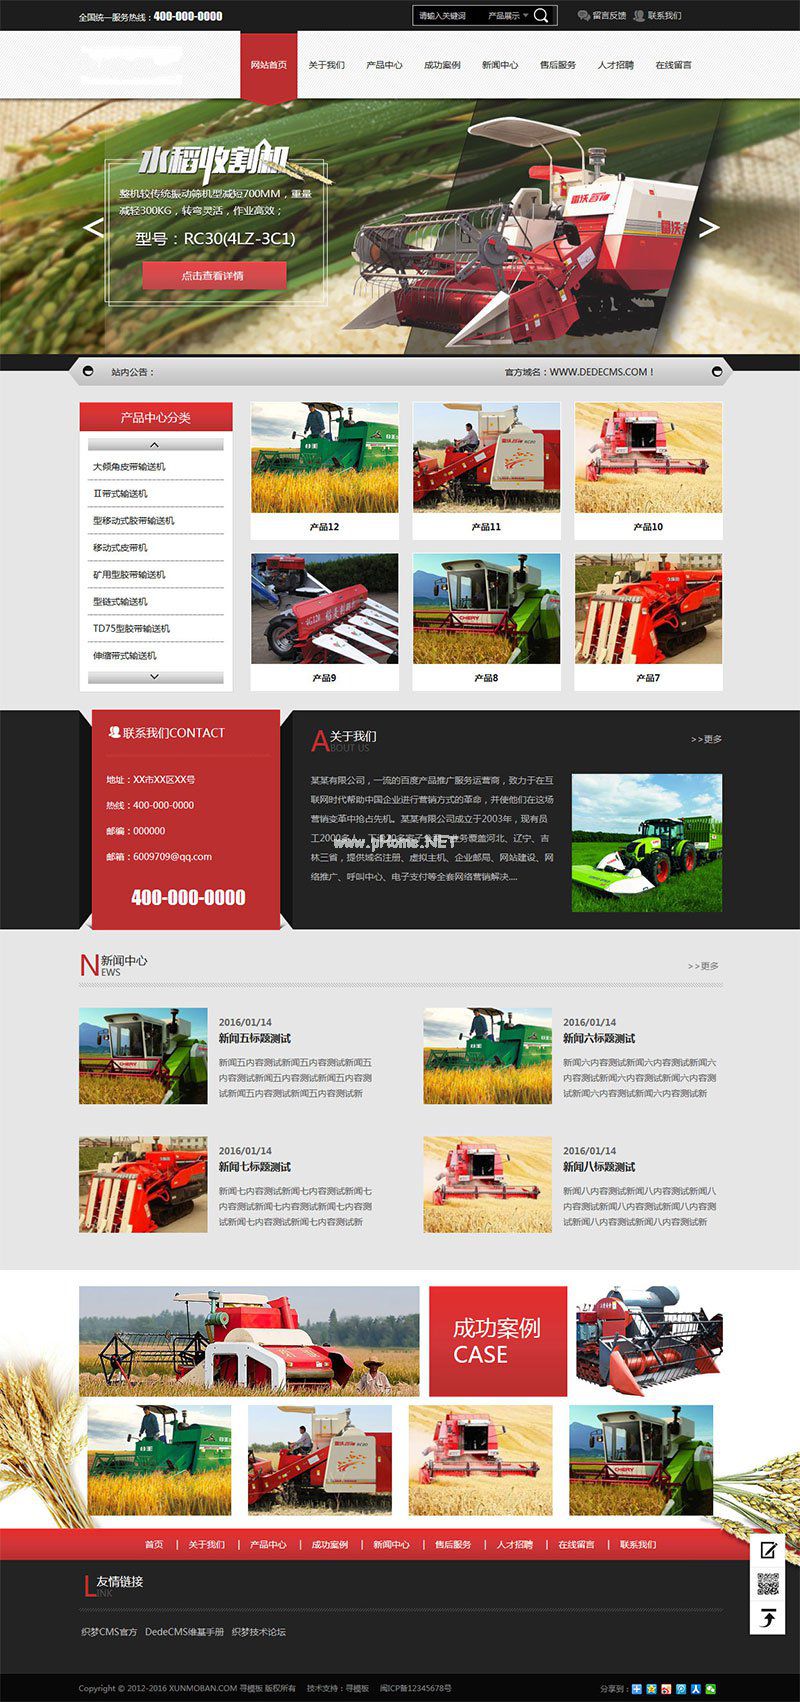     收割机农业机械设备公司网站源码  dedecms织梦模版
